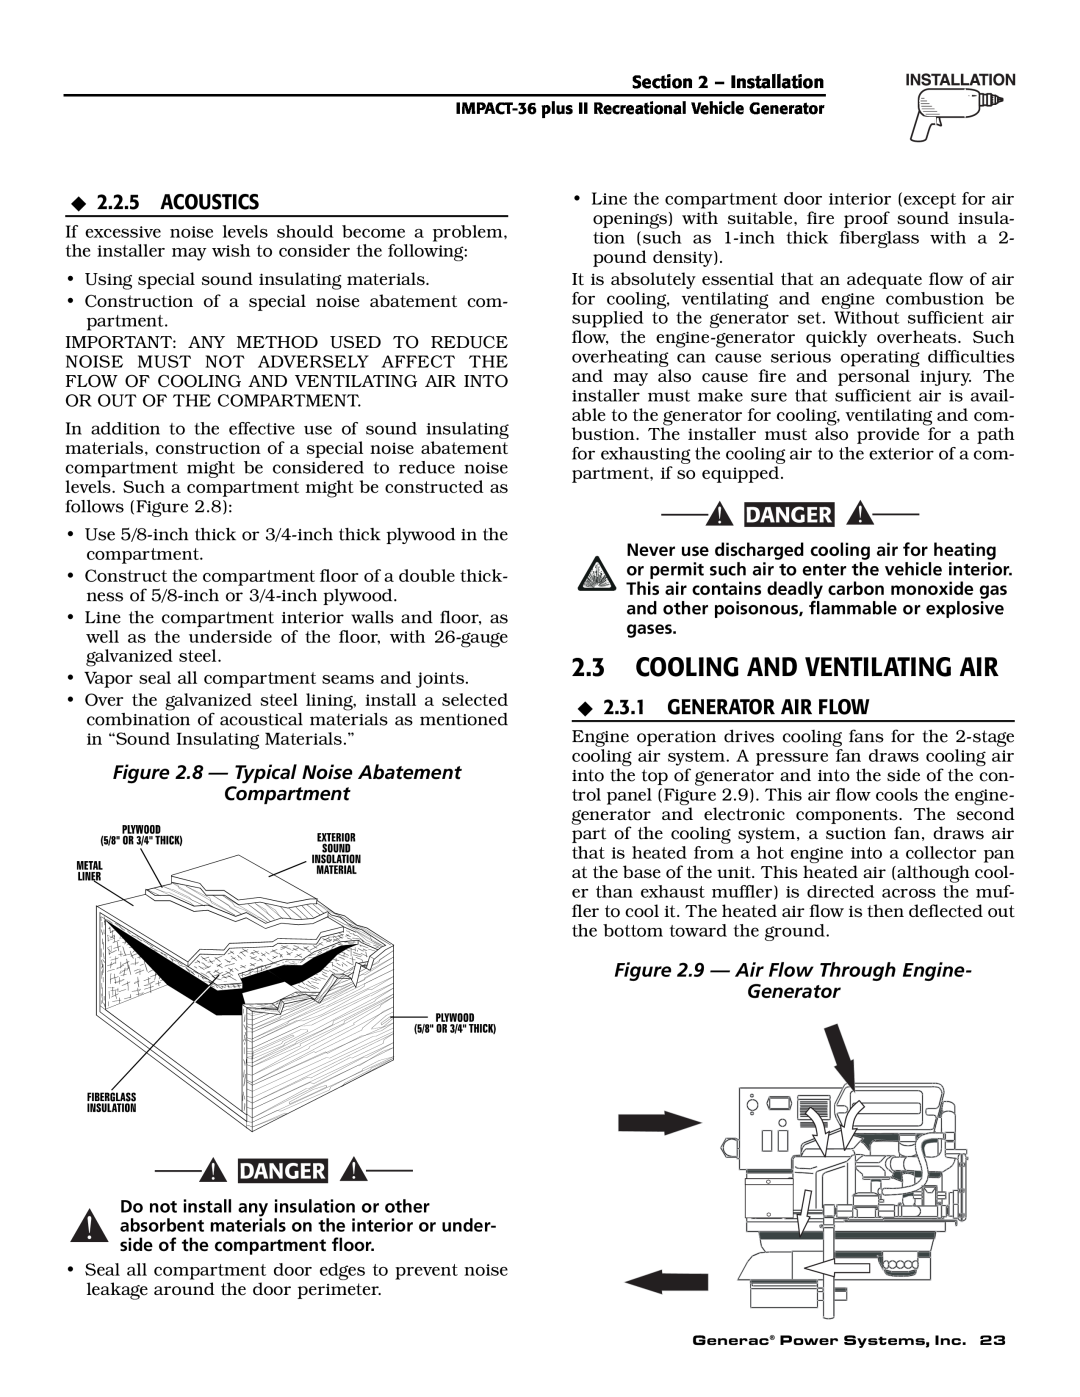 Generac 00941-3 owner manual 2.3COOLING AND VENTILATING AIR, Acoustics, Generator Air Flow, Danger 